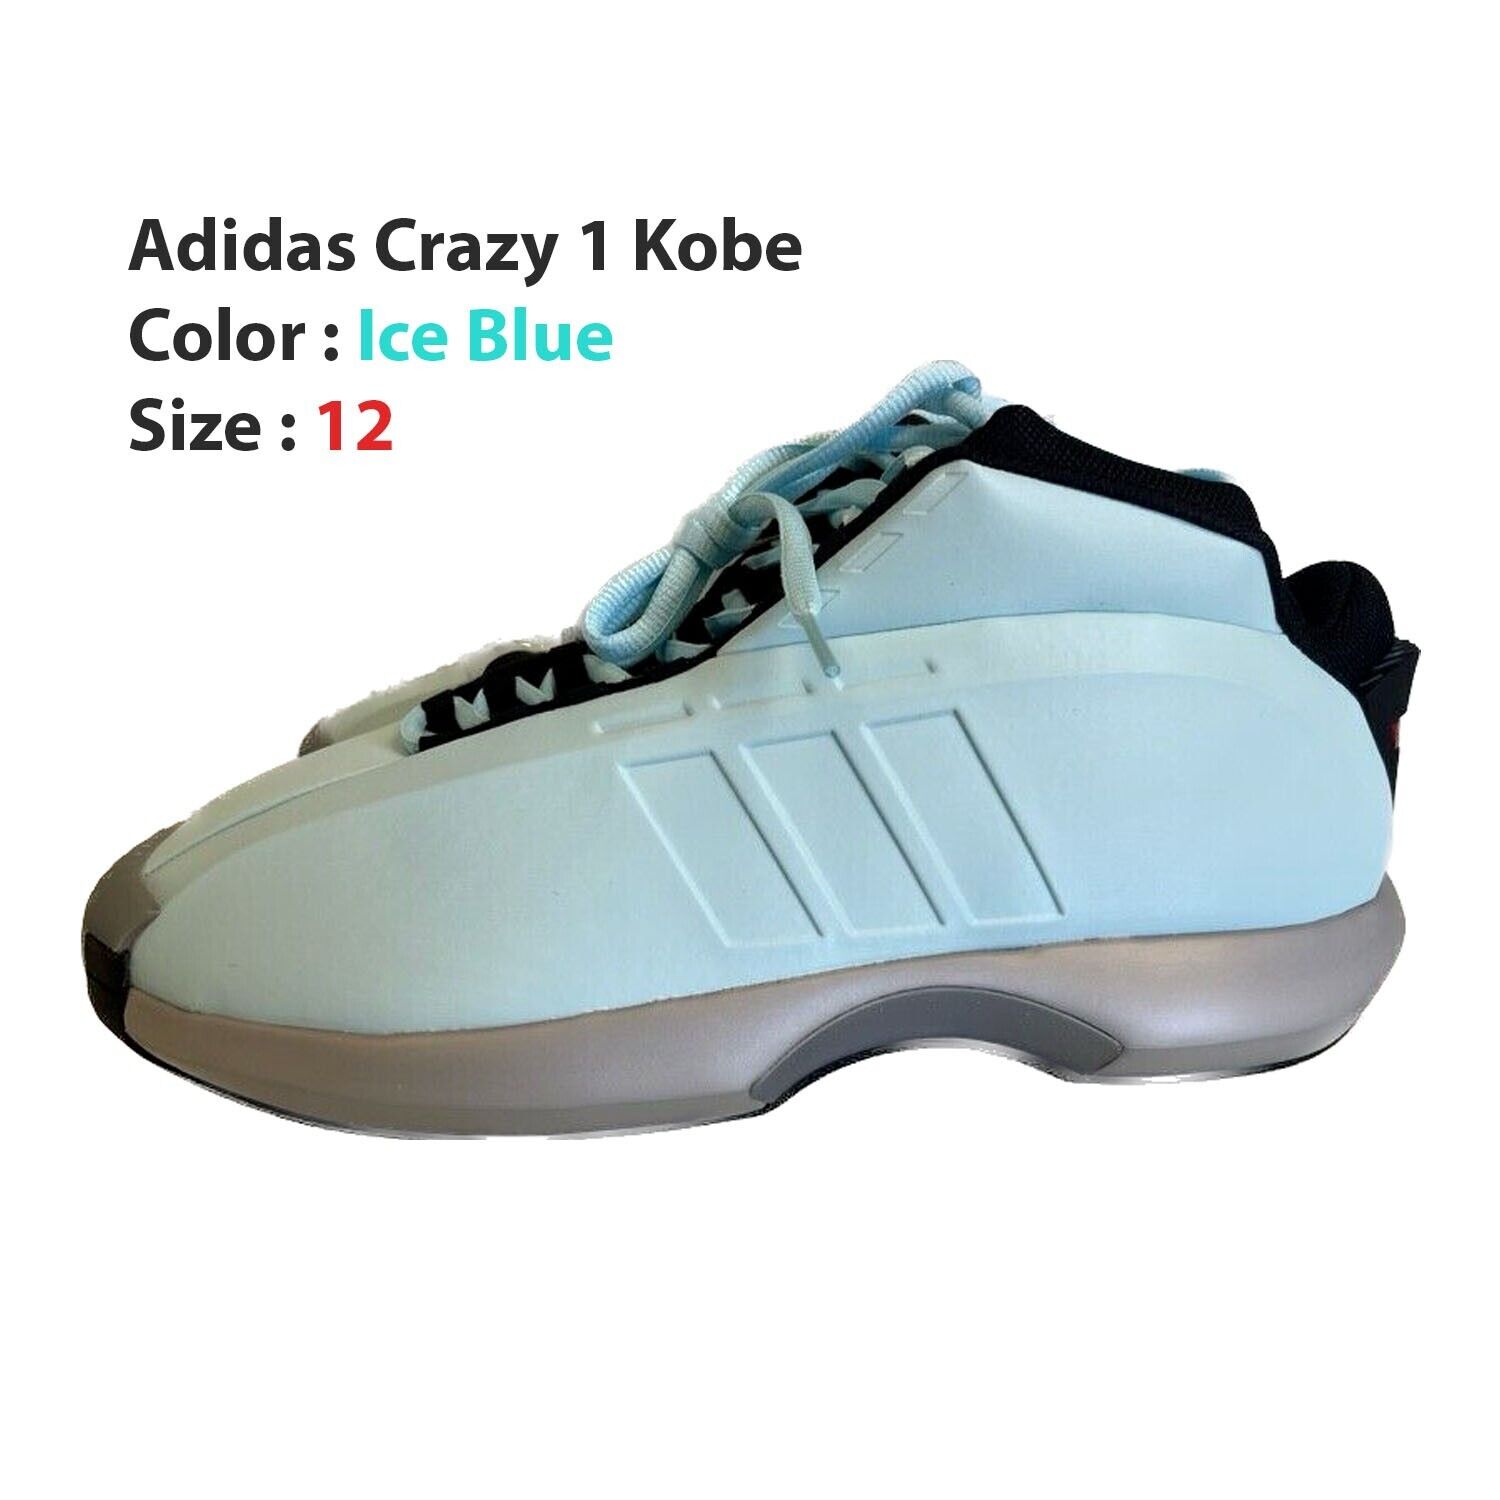 Adidas Crazy 1 Kobe - Ice Blue - IG5896 Men\'s Shoes - Us Shoe Size 12